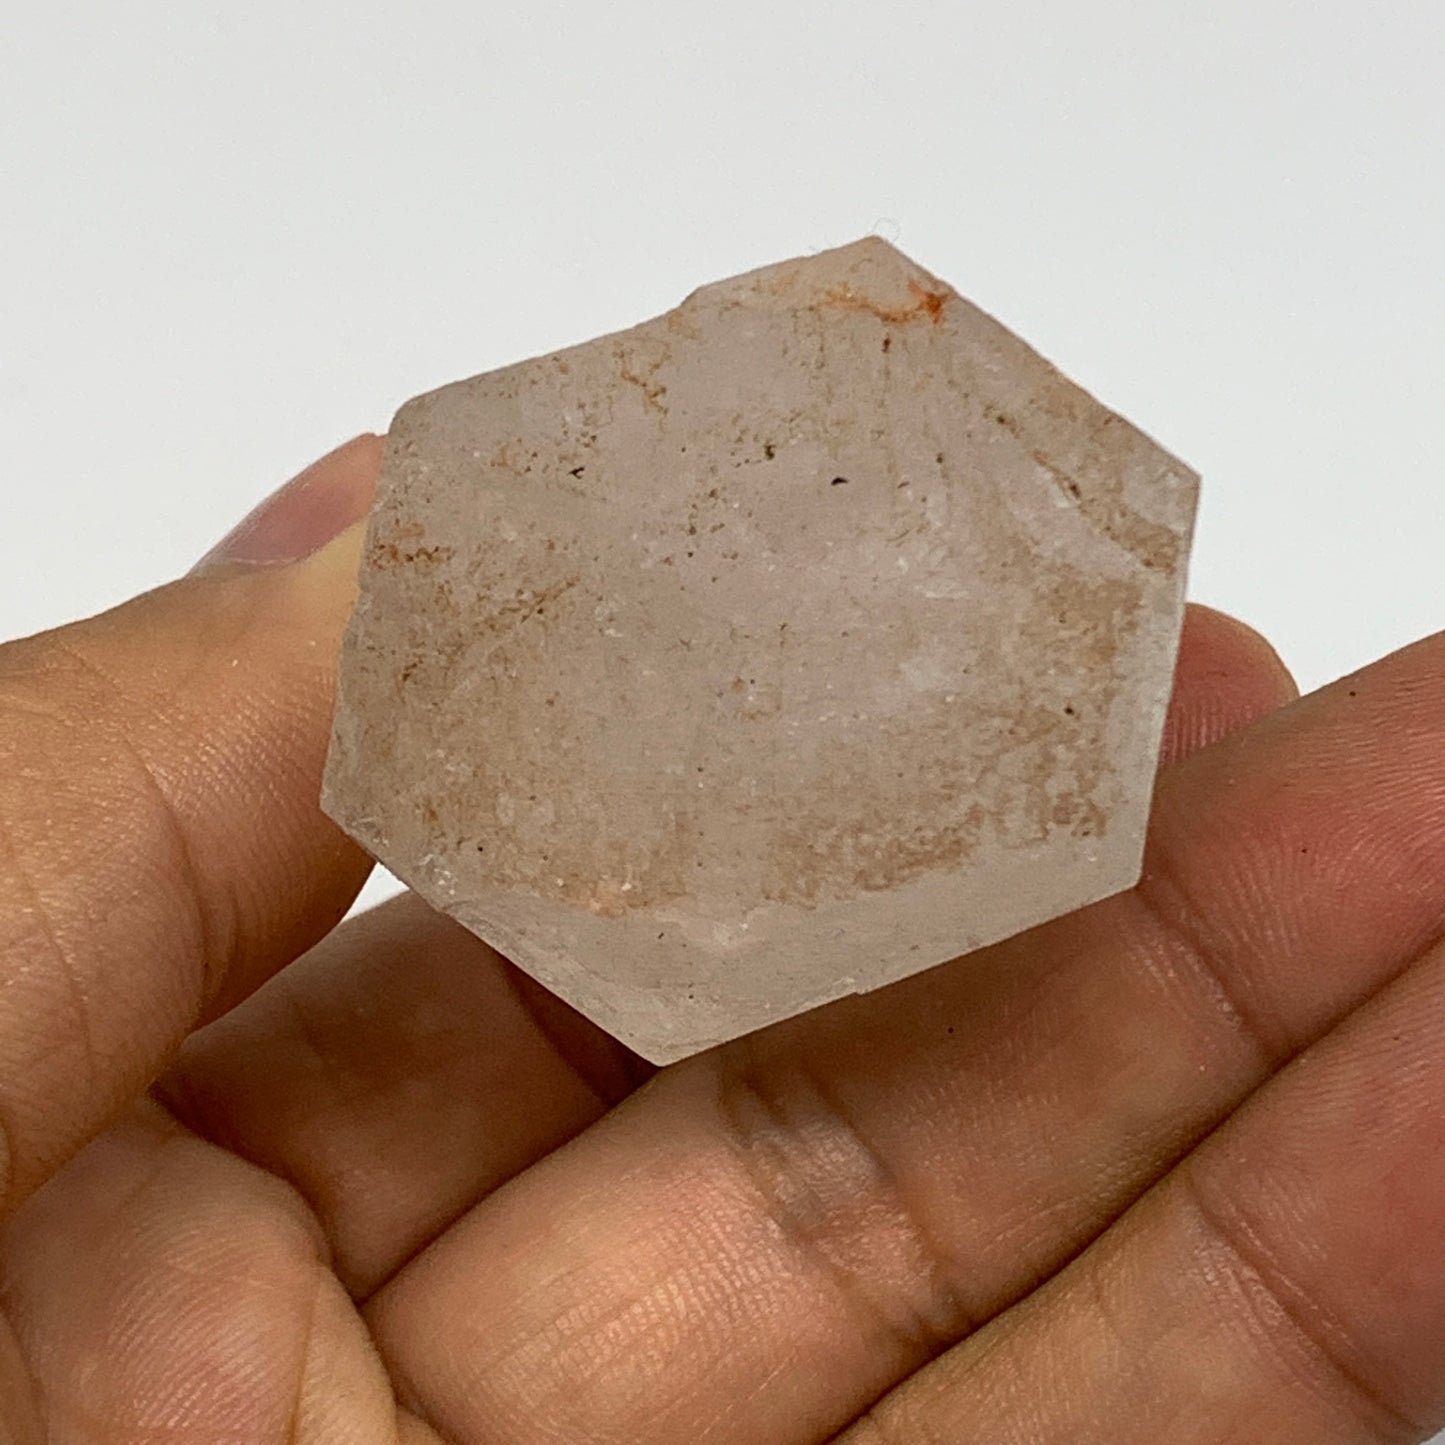 71.4g, 2"x1.5"x1.2", Lemurian Quartz Crystal Mineral Specimens @Brazil, B19248